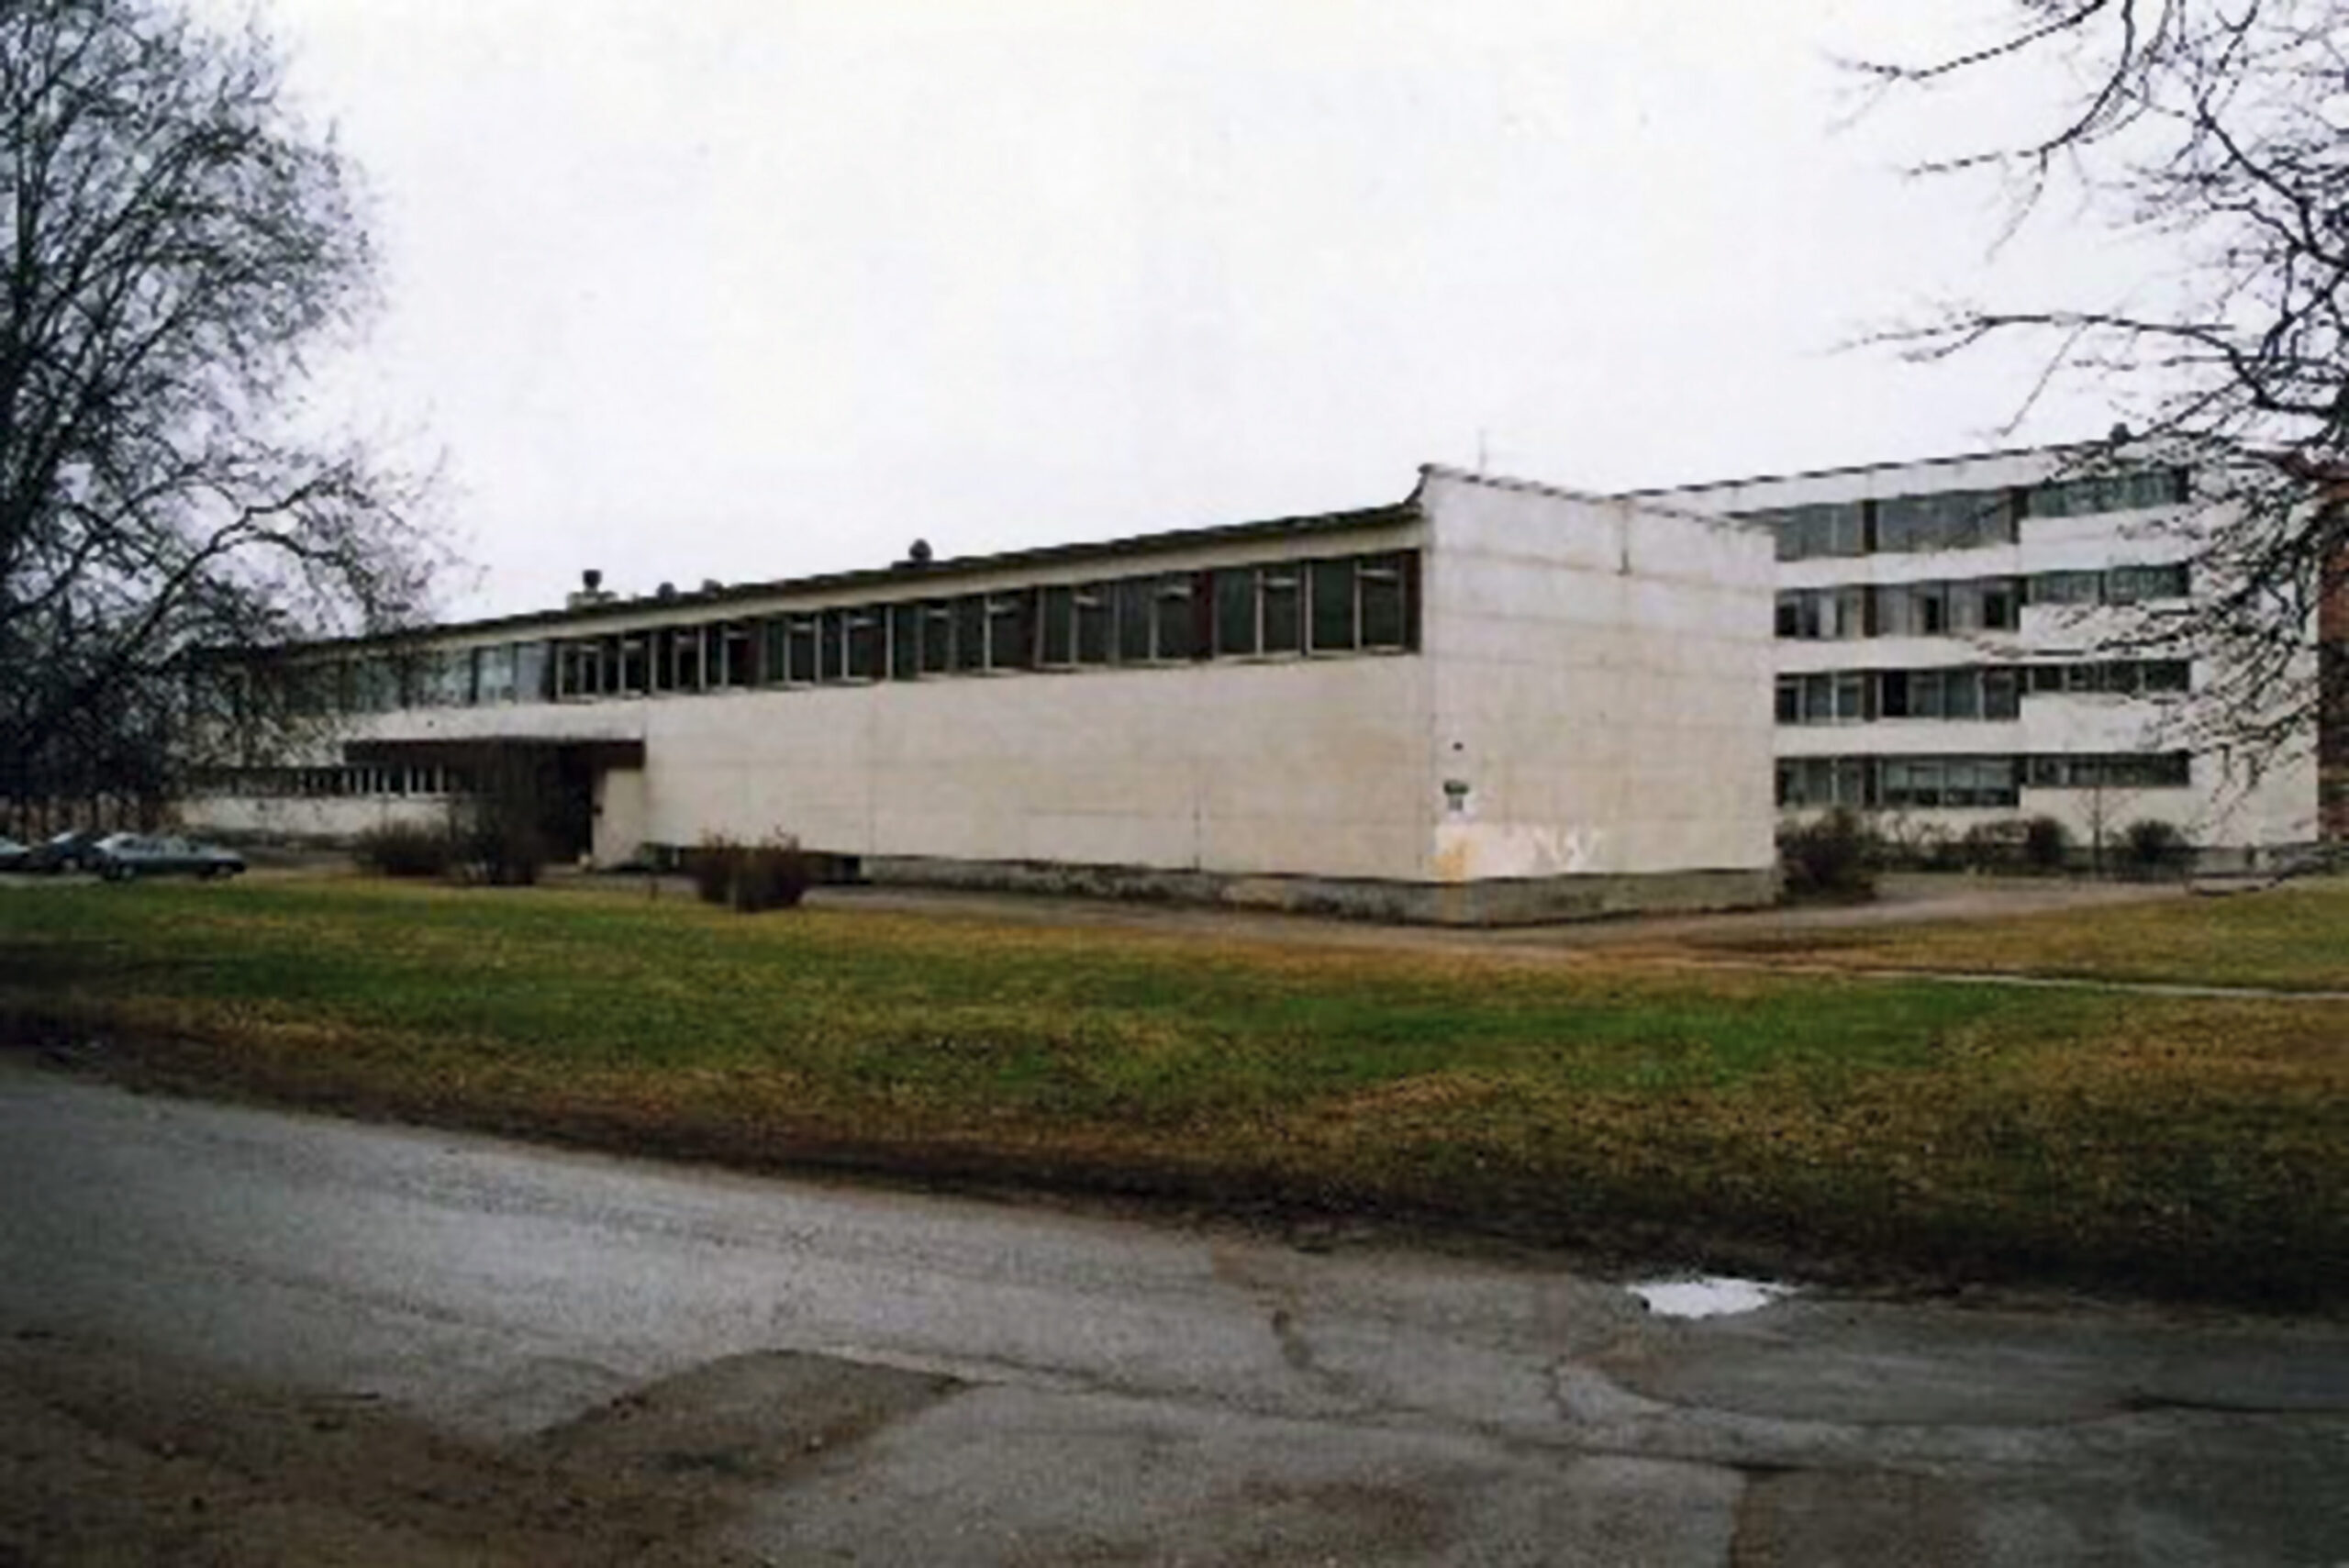 Tartu meditsiinikool (Nooruse t). Tartu, 1999. Foto Aldo Luud., TM F 1069:79, Tartu Linnaajaloo Muuseumid / Tartu Linnamuuseum.